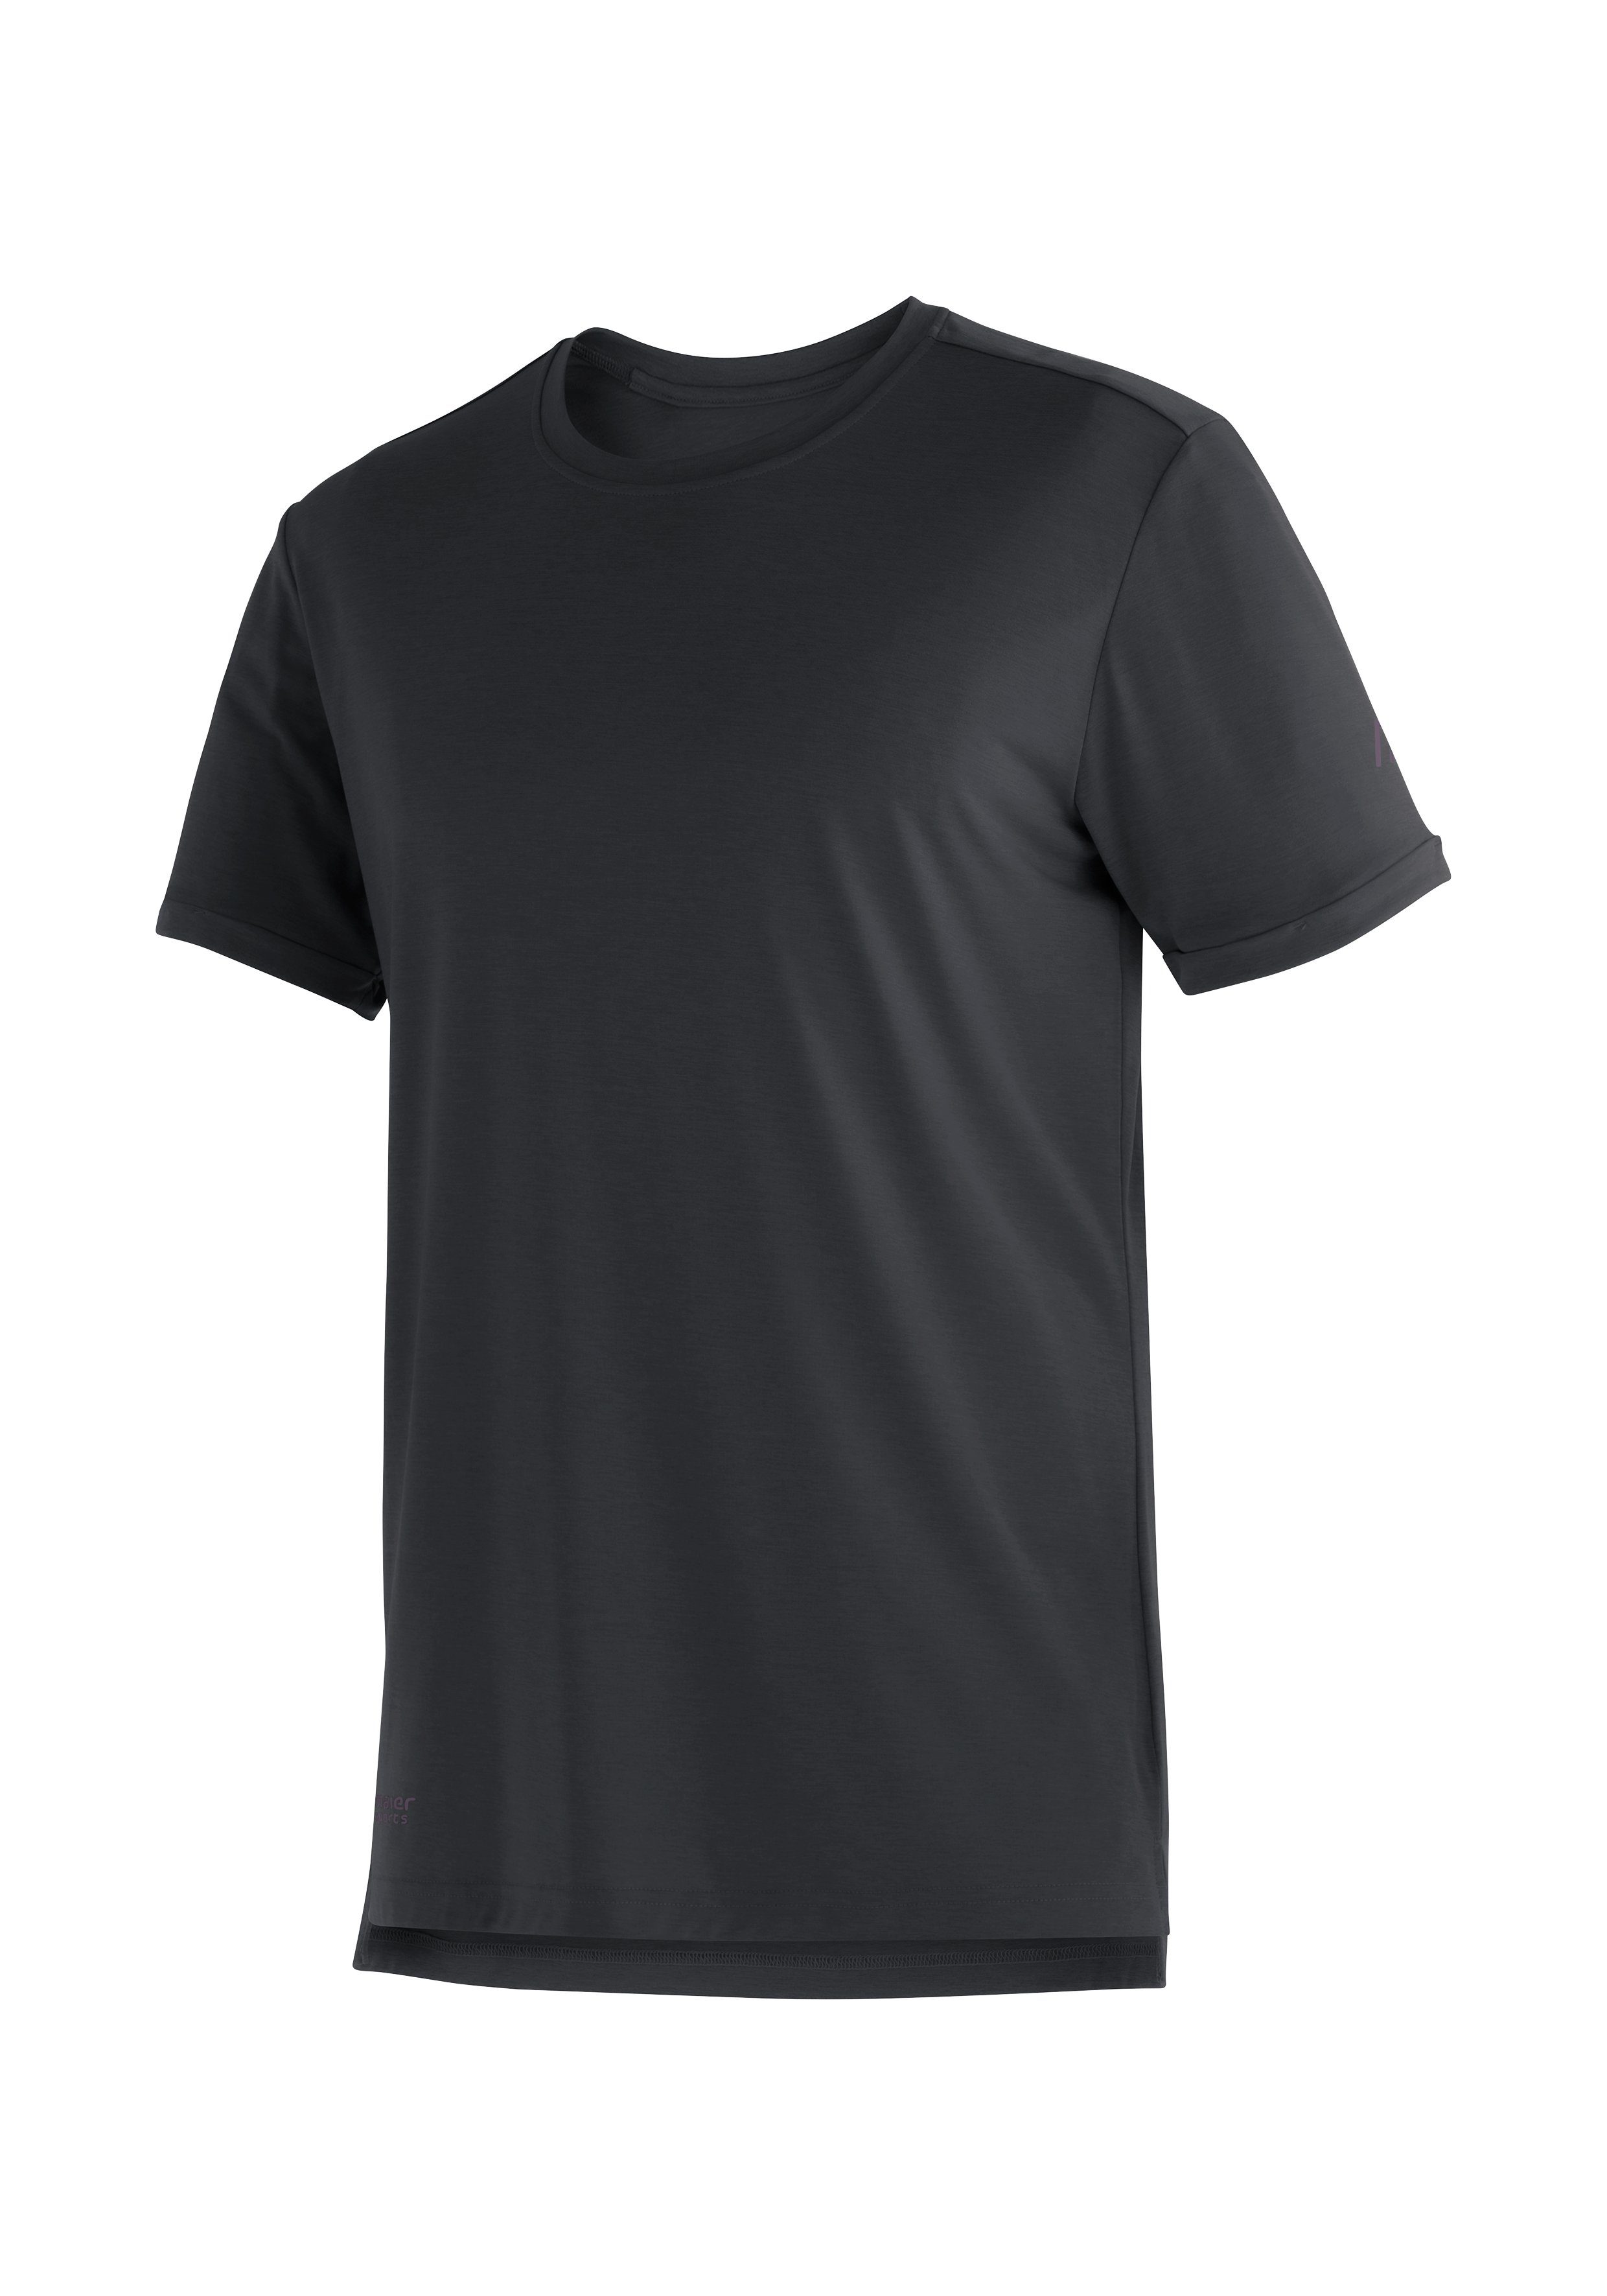 Mit M S/S Kurzarmshirt Maier für jede Sports Freizeit, Herren und Tour pflegeleichten einsetzbar Eigenschaften Horda für T-Shirt Wandern